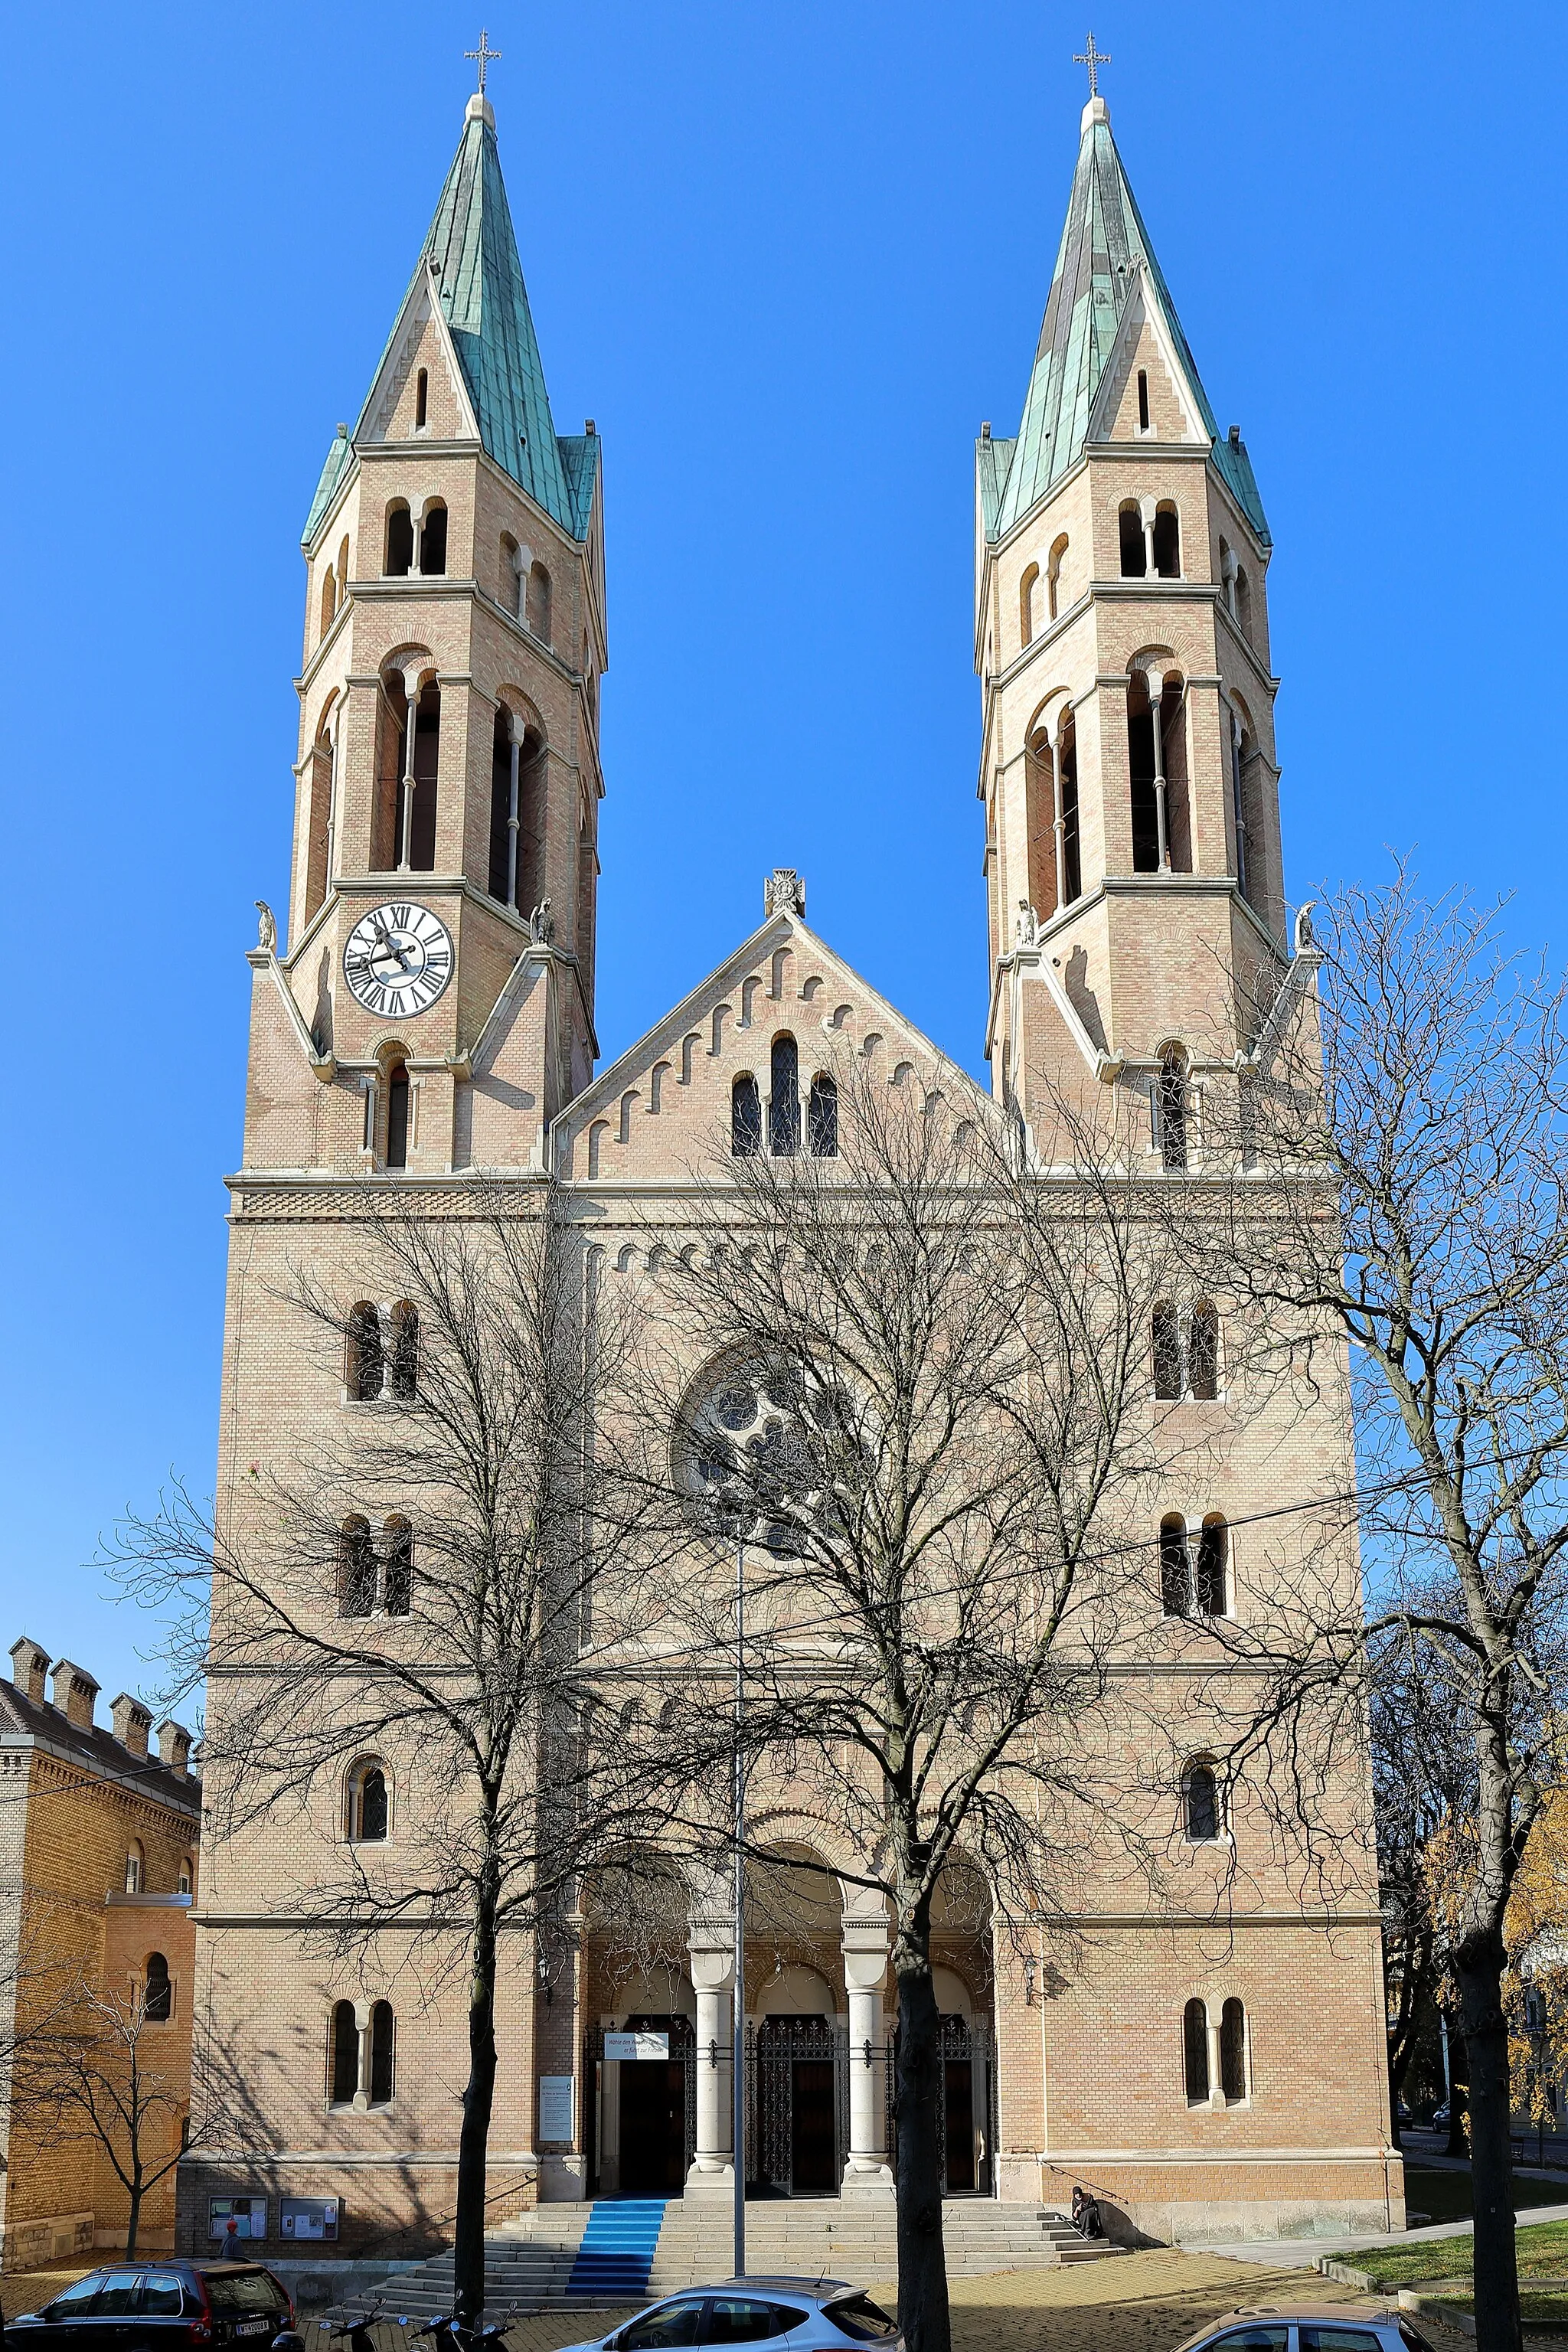 Photo showing: Ostansicht der Karmeliterkirche mit ihrer Doppelturmfassade im 19. Wiener Bezirk Döbling. Die Kirche in Form einer neuromanischen Basilika mit drei Schiffen wurde von 1898 bis 1901 nach Plänen des Architekten Richard Jordan errichtet.